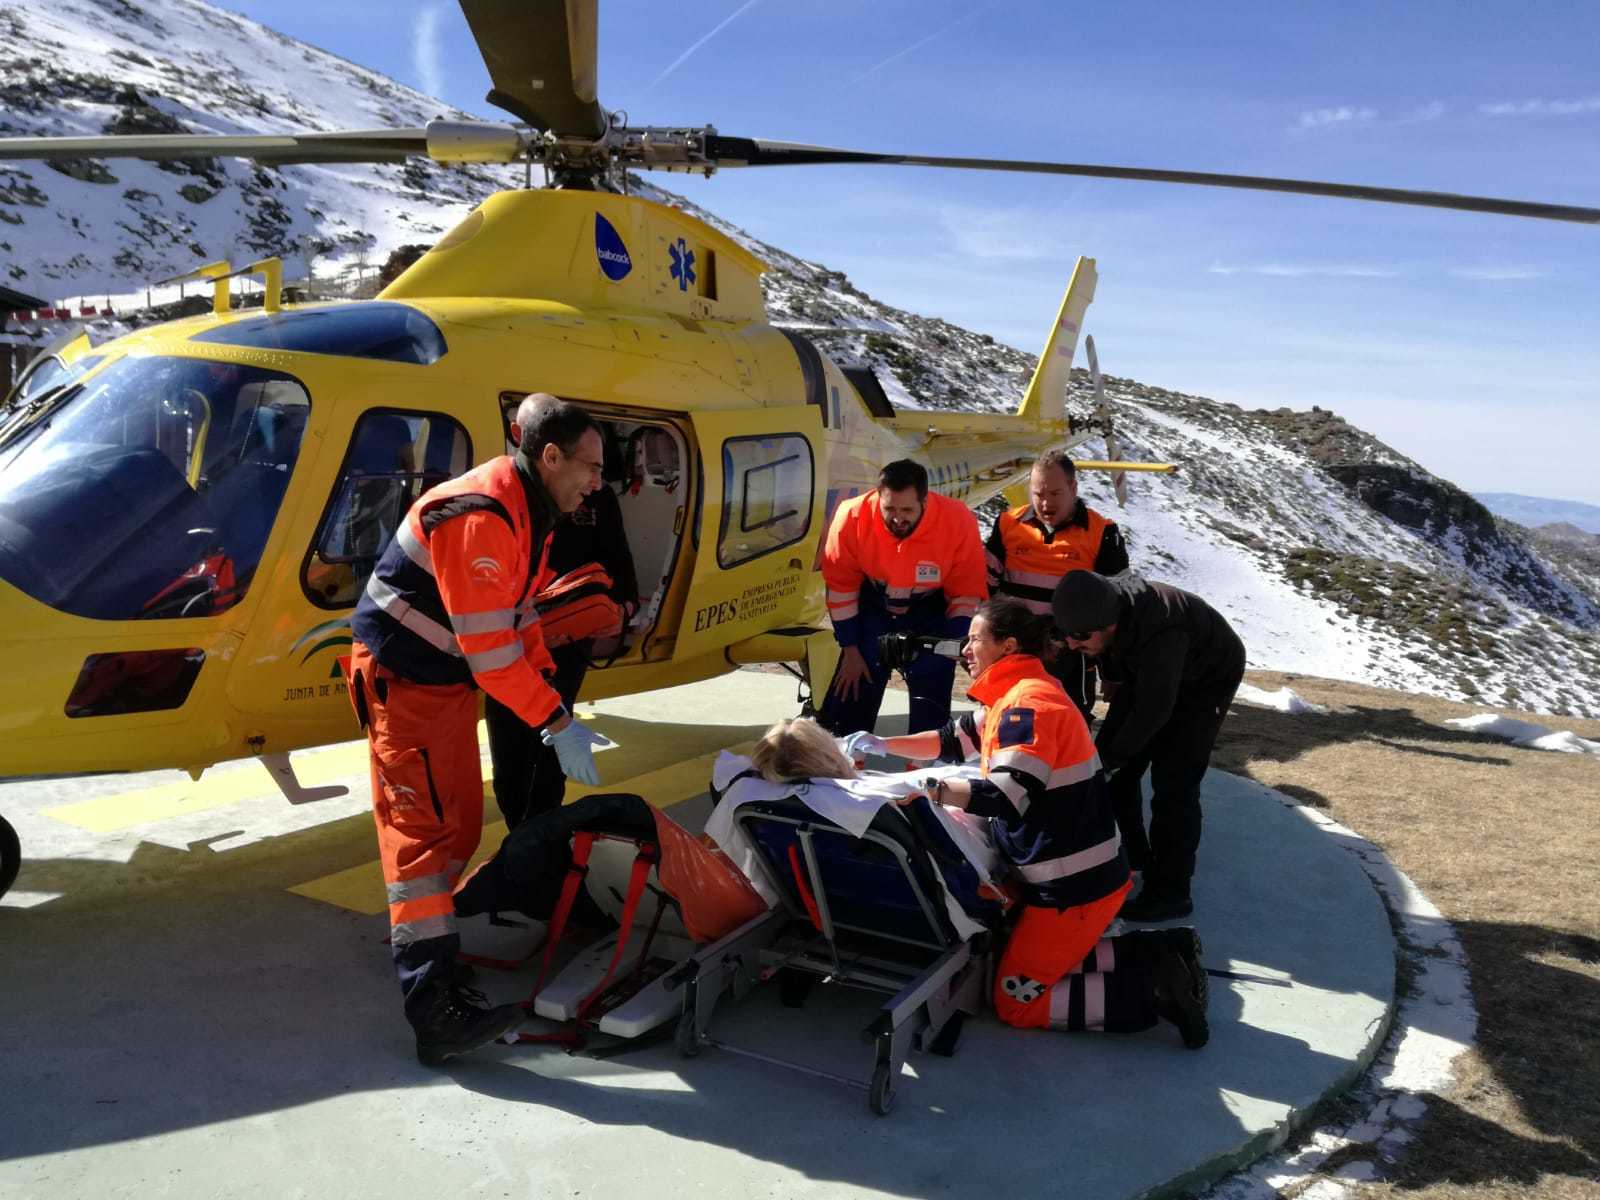 Los Servicios de Urgencias de Atención Primaria (SUAP) de Sierra Nevada avisan al 061 cuando necesitan trasladar a algún paciente en helicóptero.